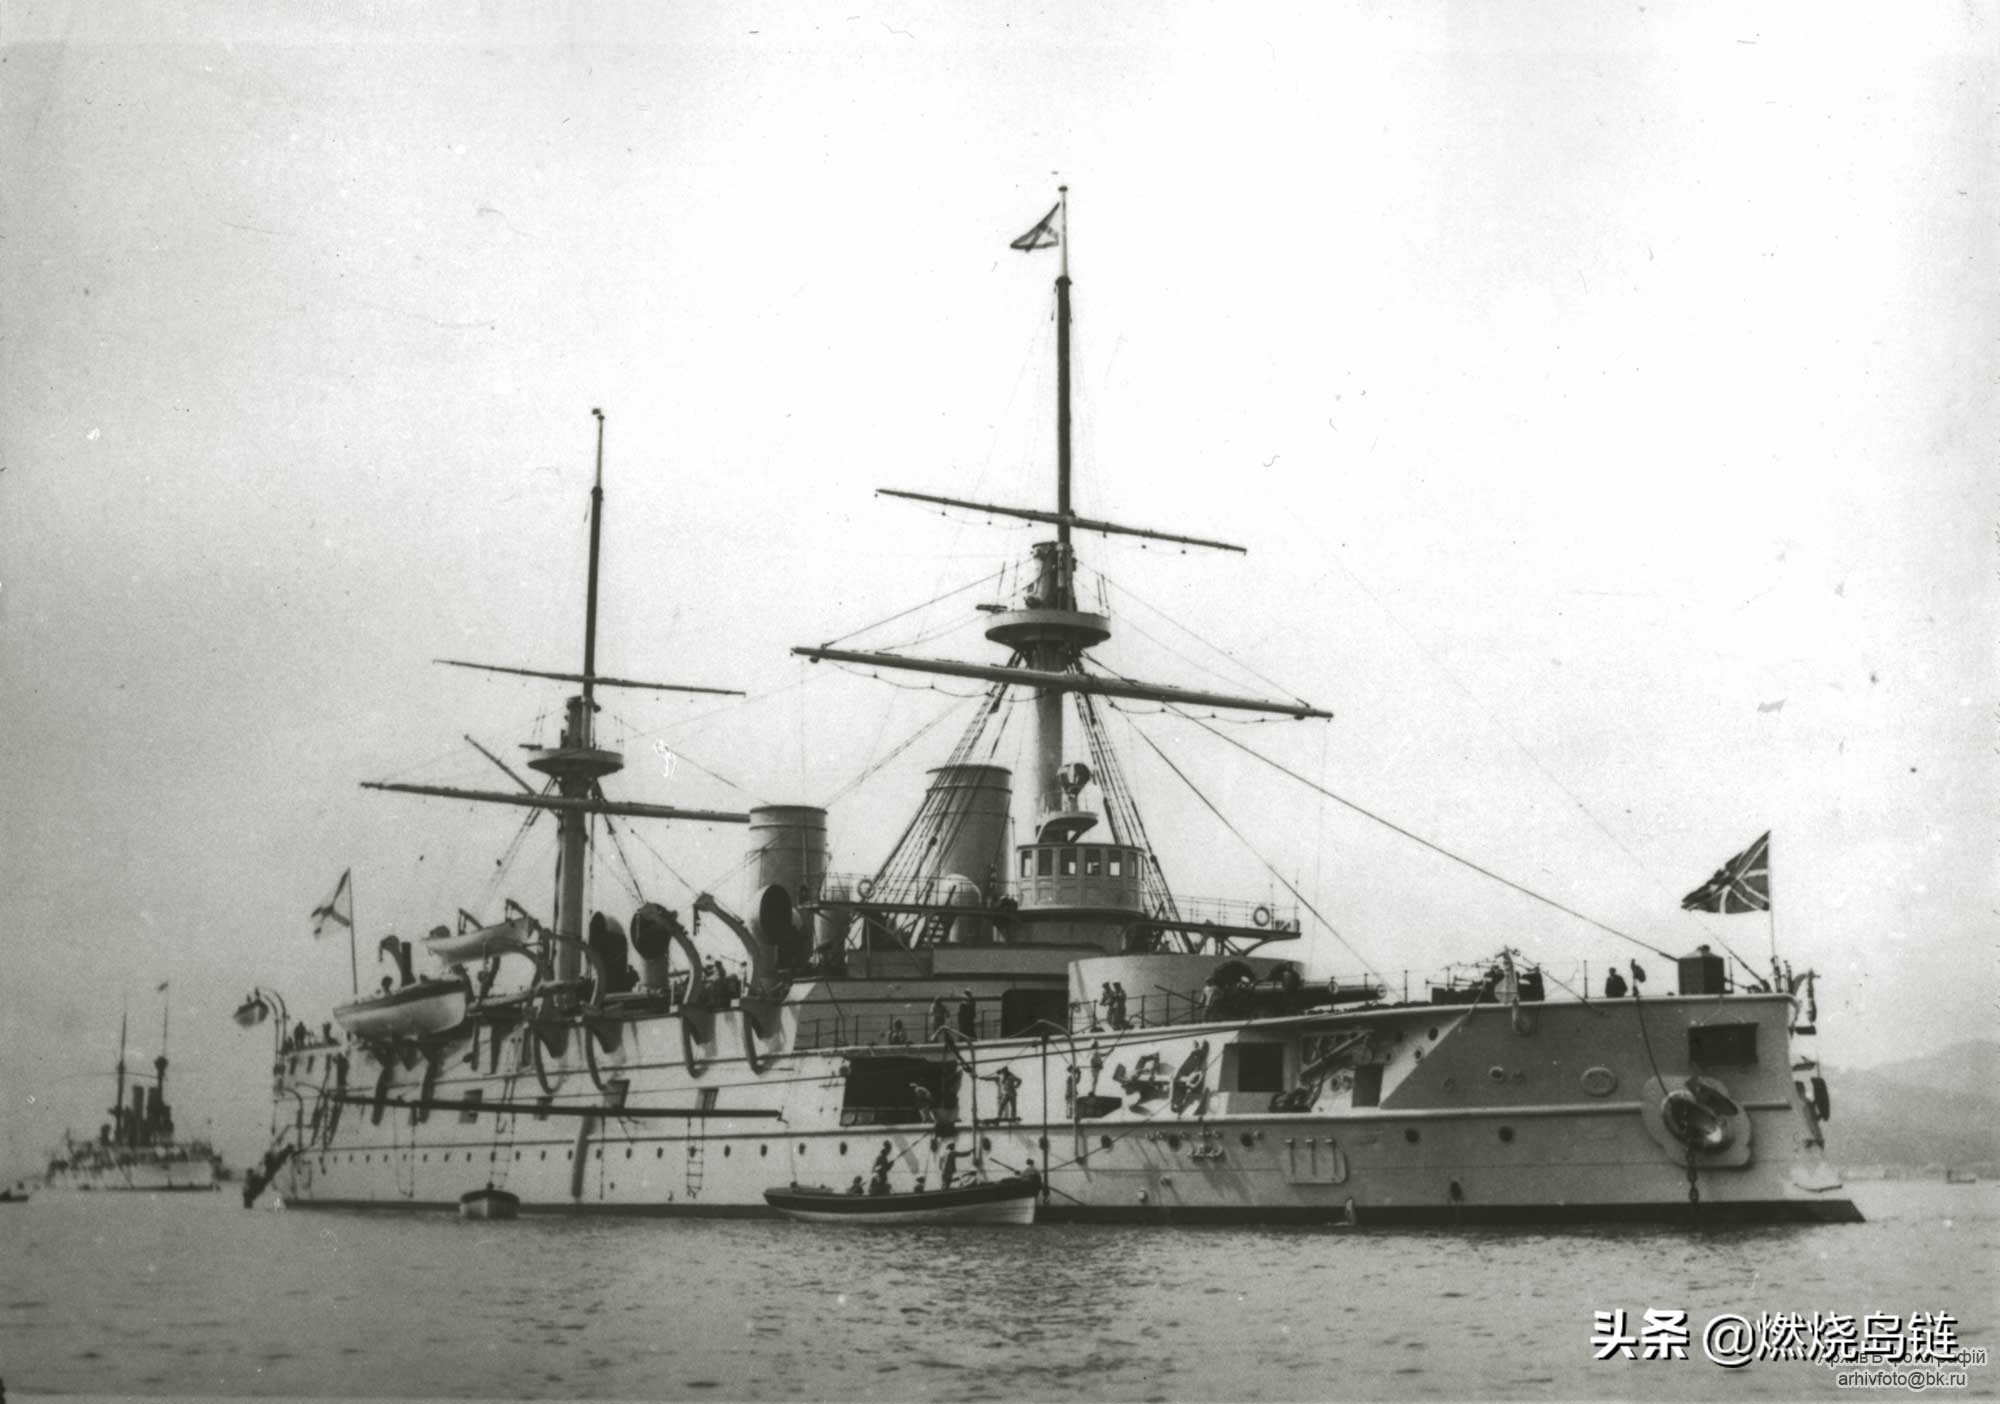 日俄战争中沙俄第三太平洋舰队旗舰"尼古拉一世"号岸防战列舰